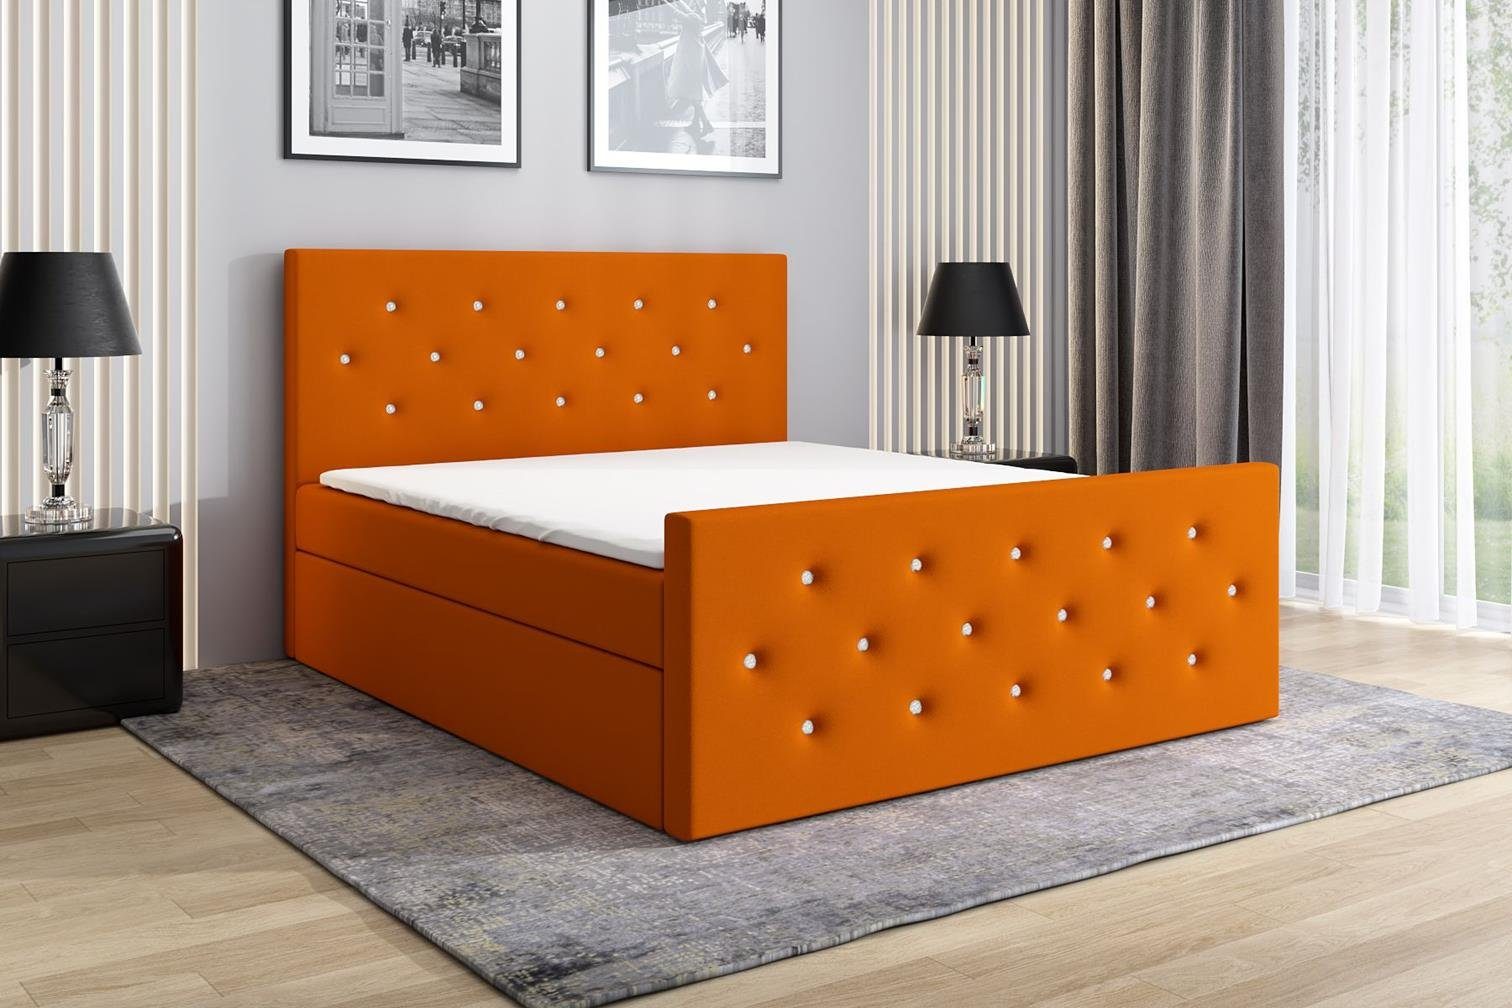 REINN Orange 17 MöbelLand Boxspringbett verziert. mit Kristallknöpfen A&J GmbH